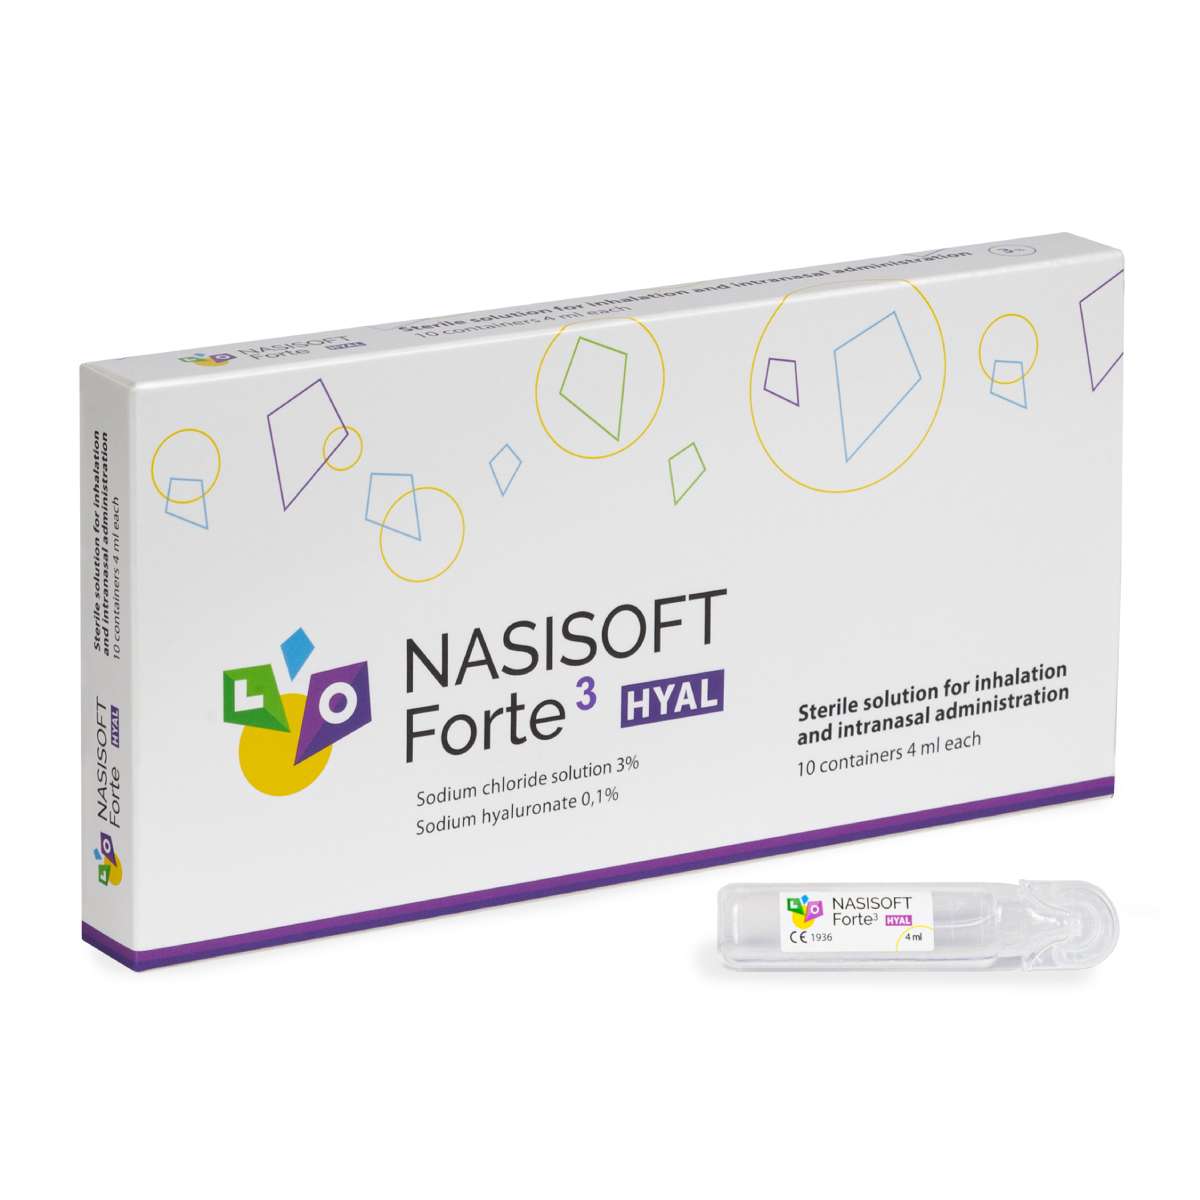 Nasisoft Forte 3